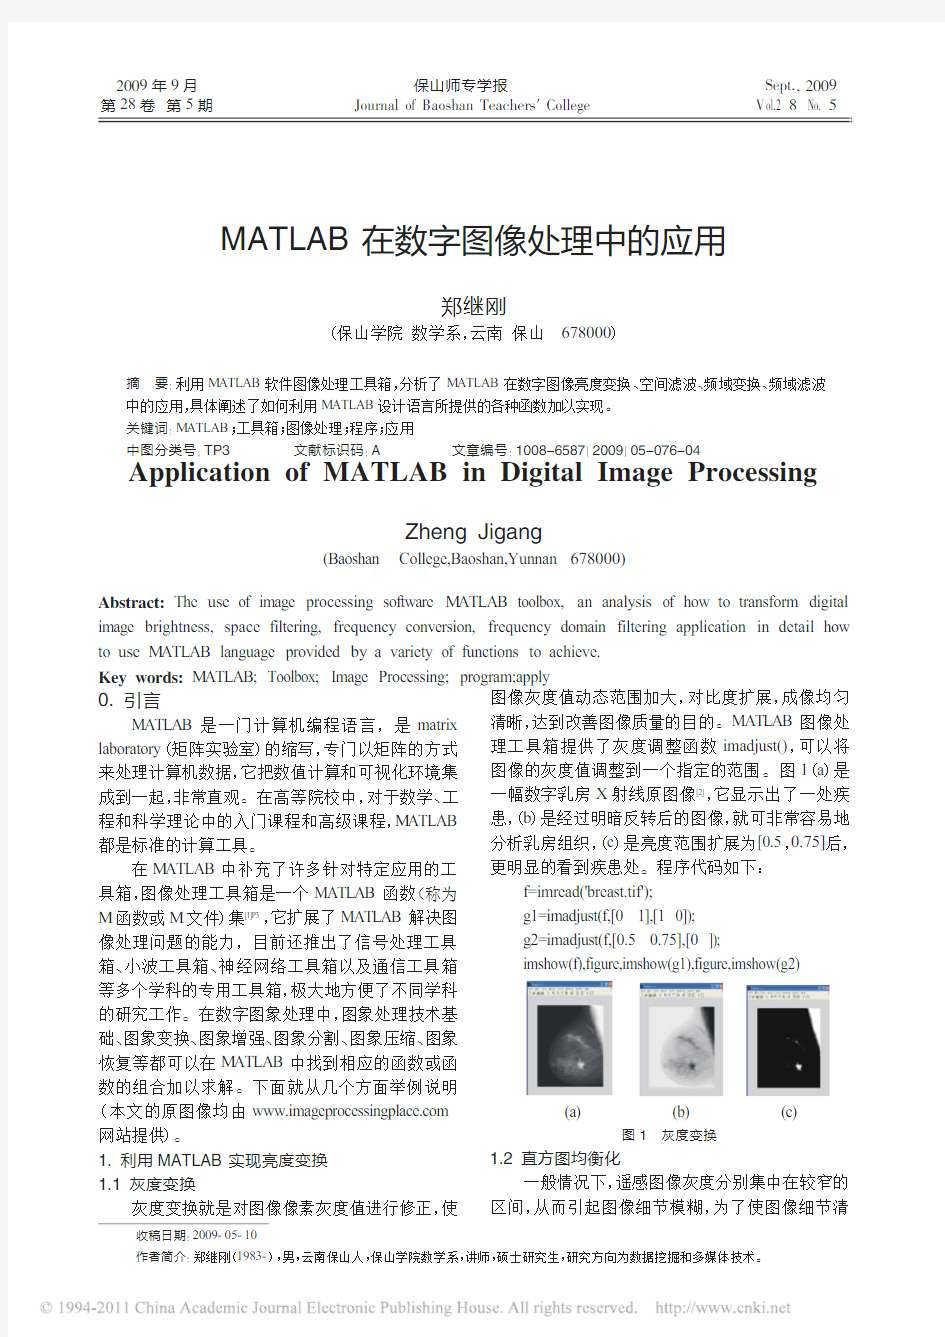 MATLAB在数字图像处理中的应用